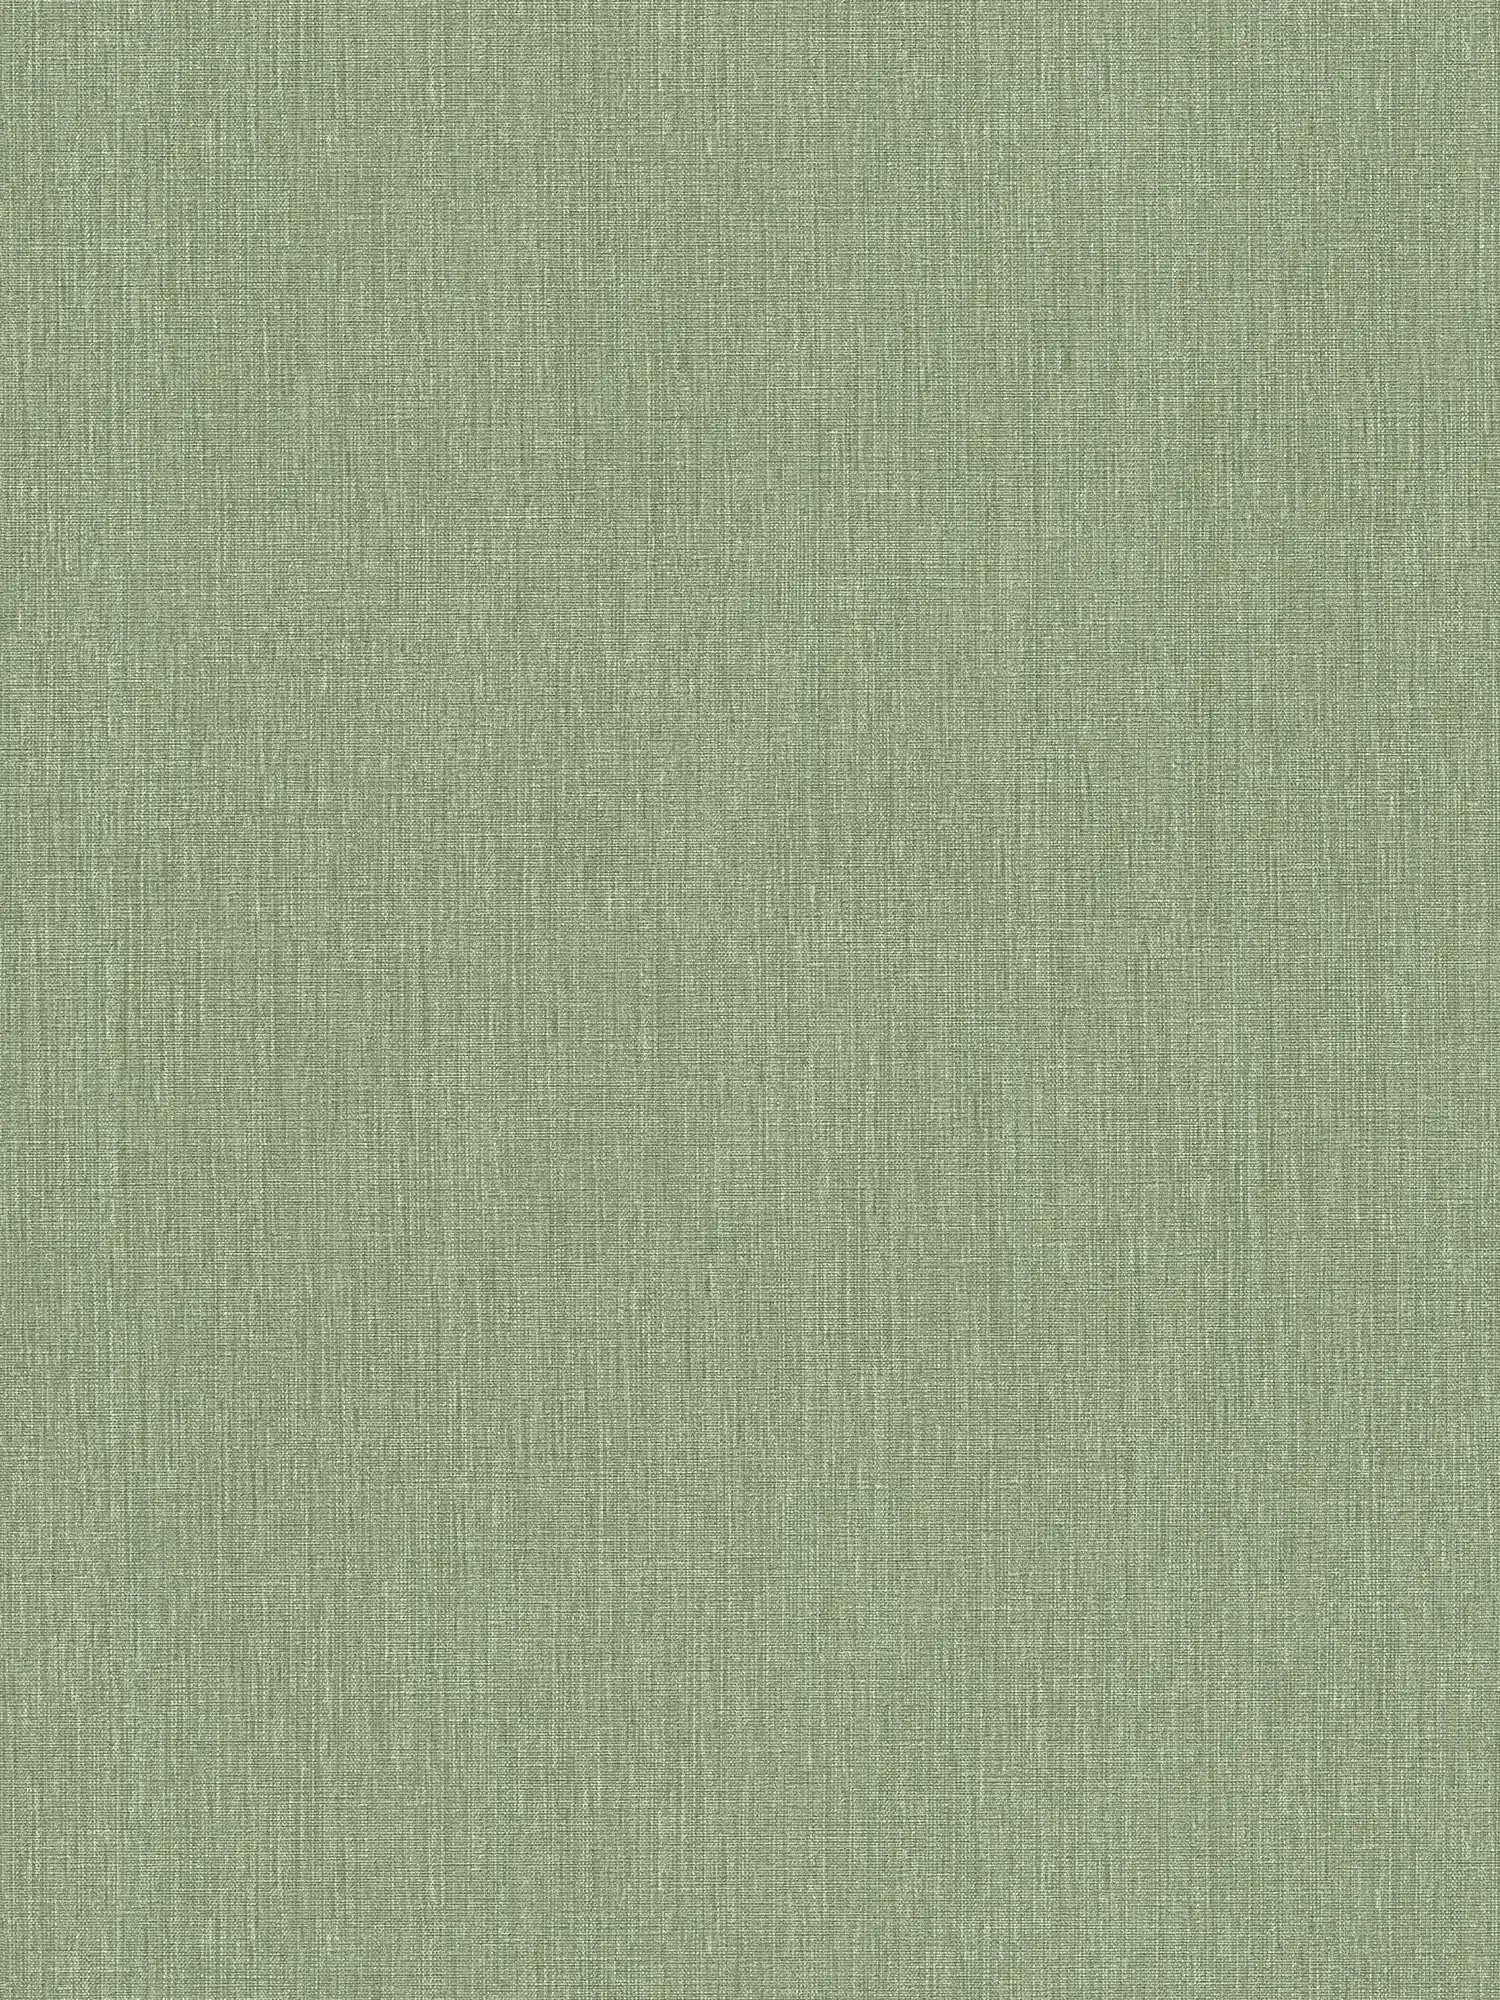 Leicht strukturierte Vliestapete in Textiloptik – Grün
